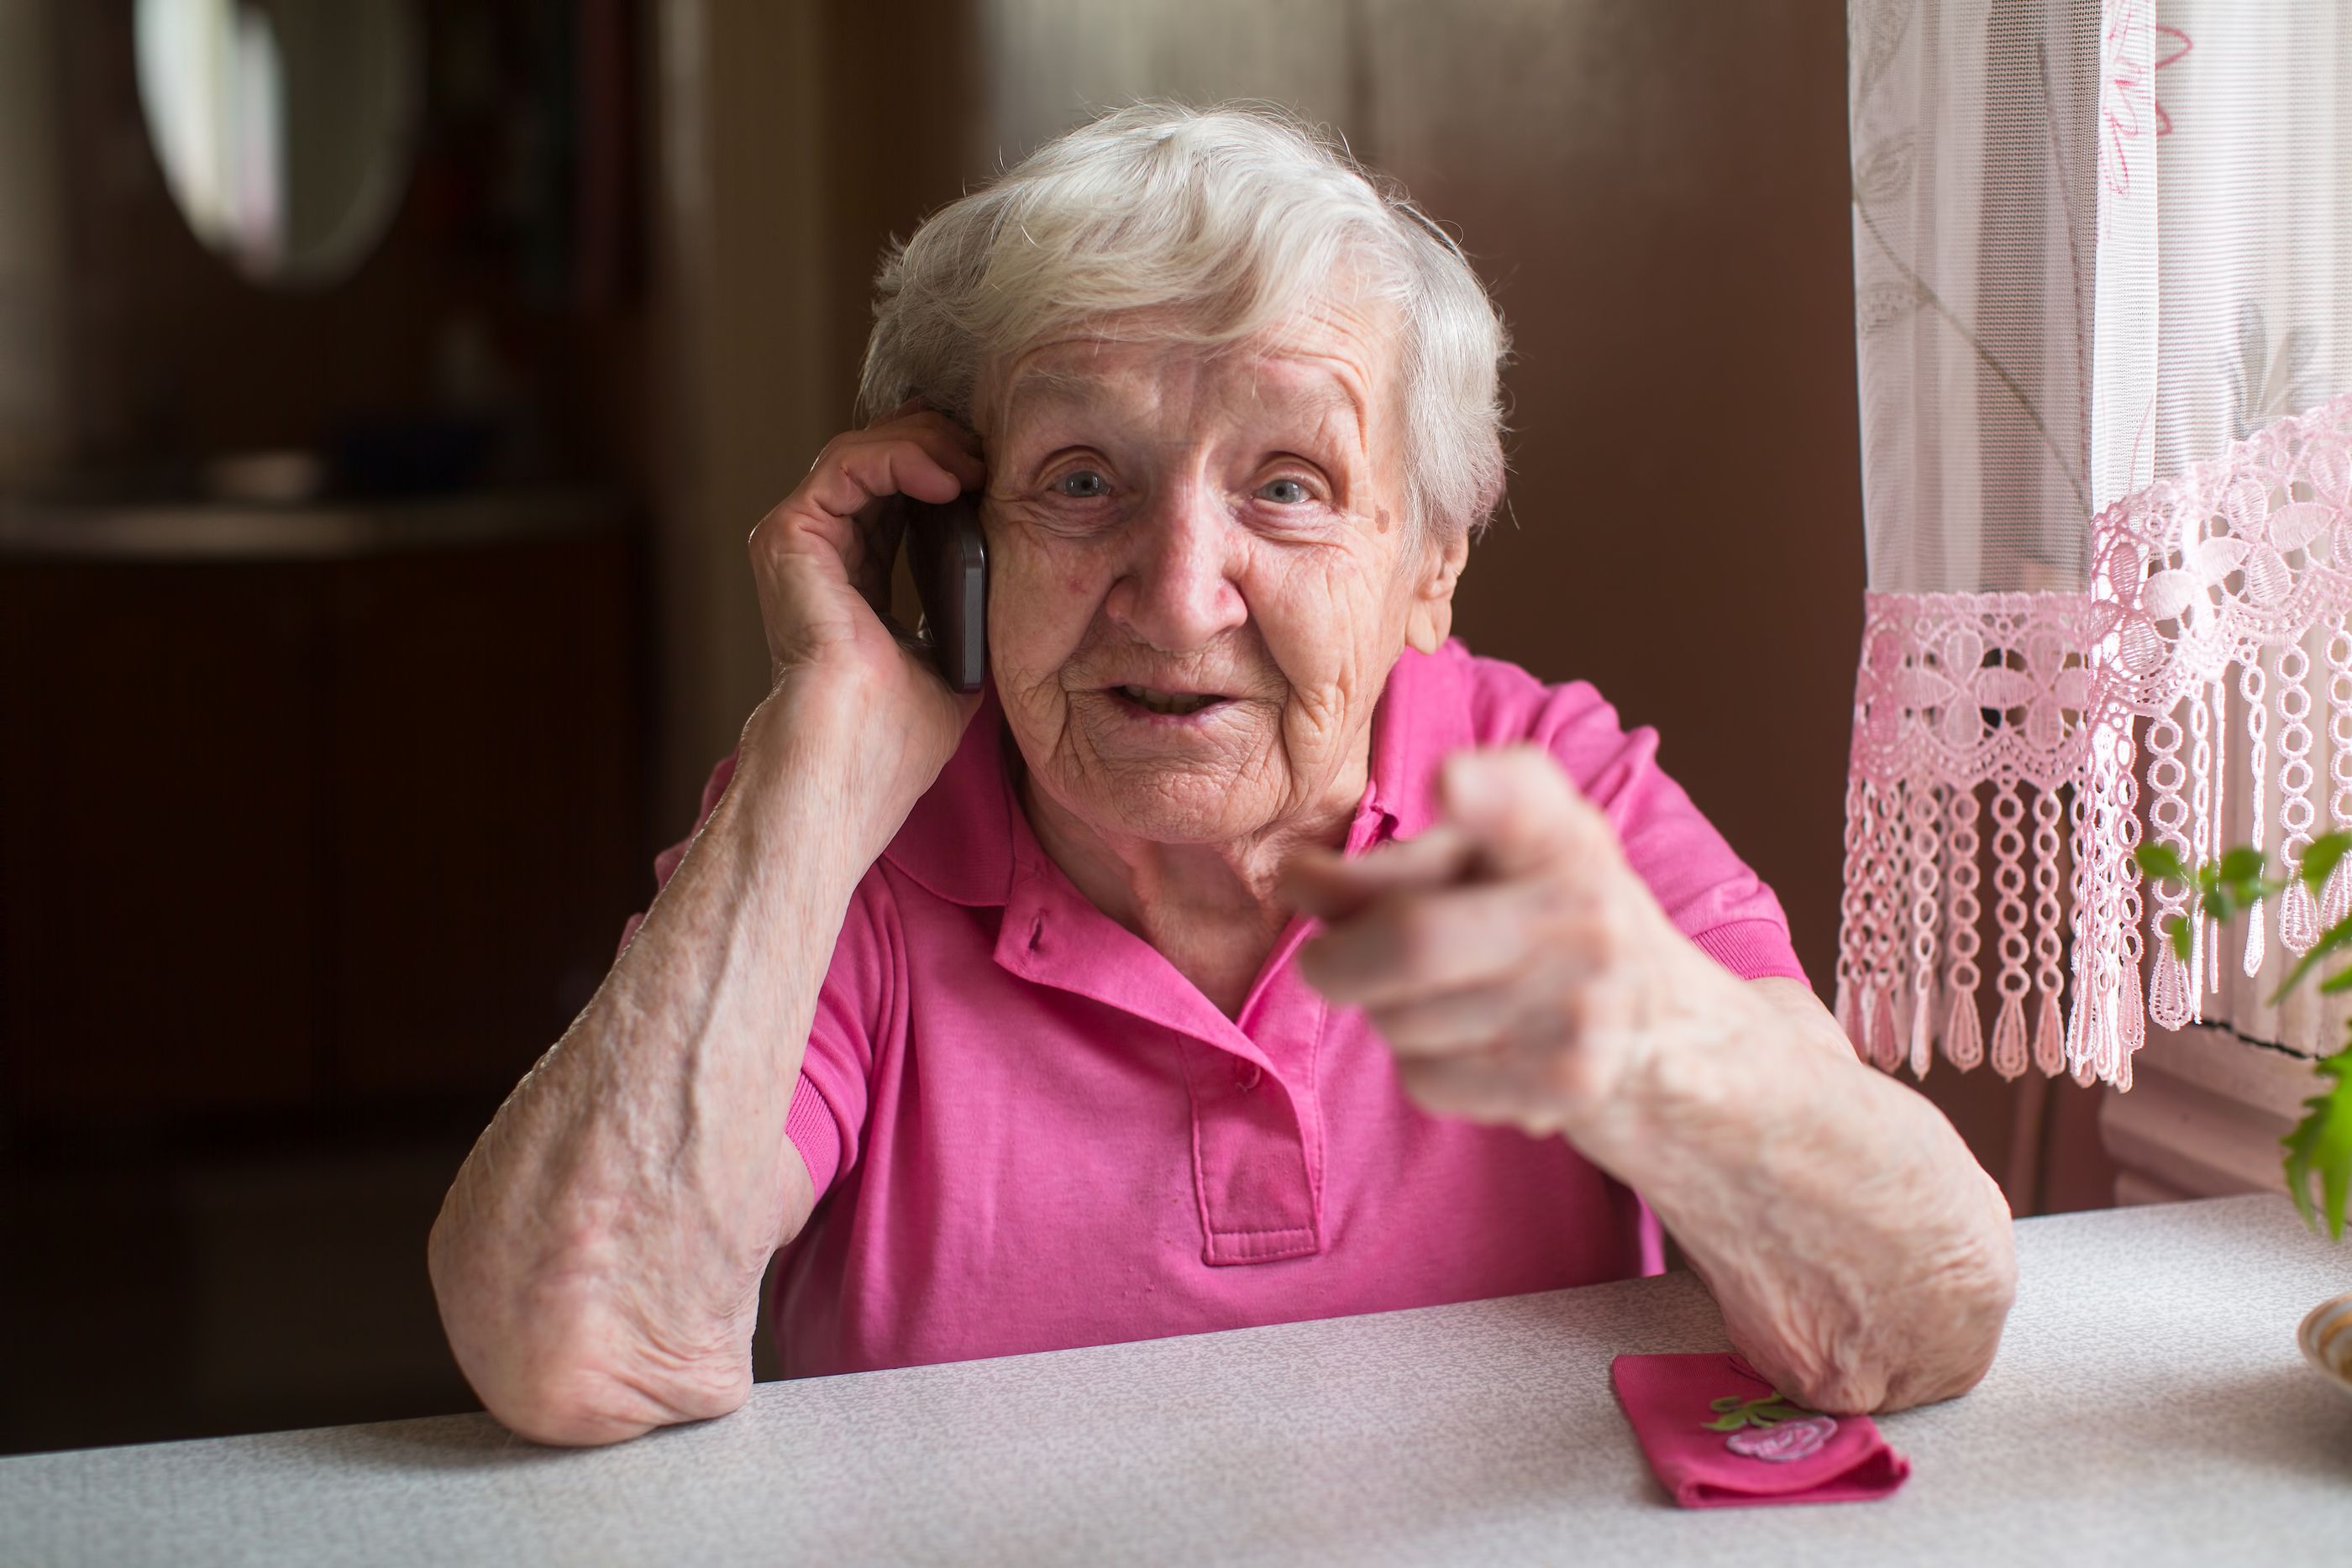 Nace 'Charlamos', una iniciativa de acompañamiento telefónico a mayores en soledad